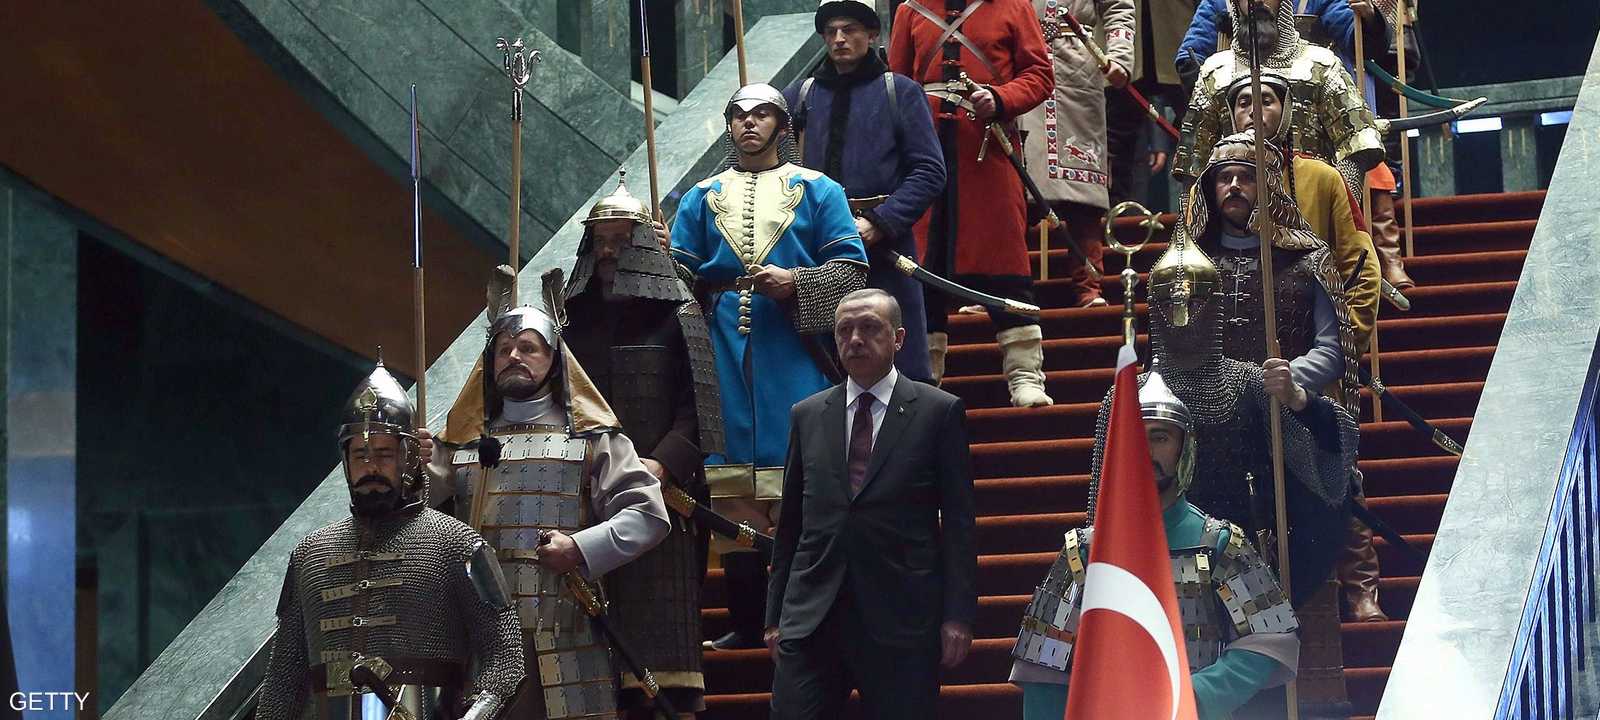 بنى أردوغان قصرا رئاسيا فاخرا بكلفة 491 مليون يورو عام 2014